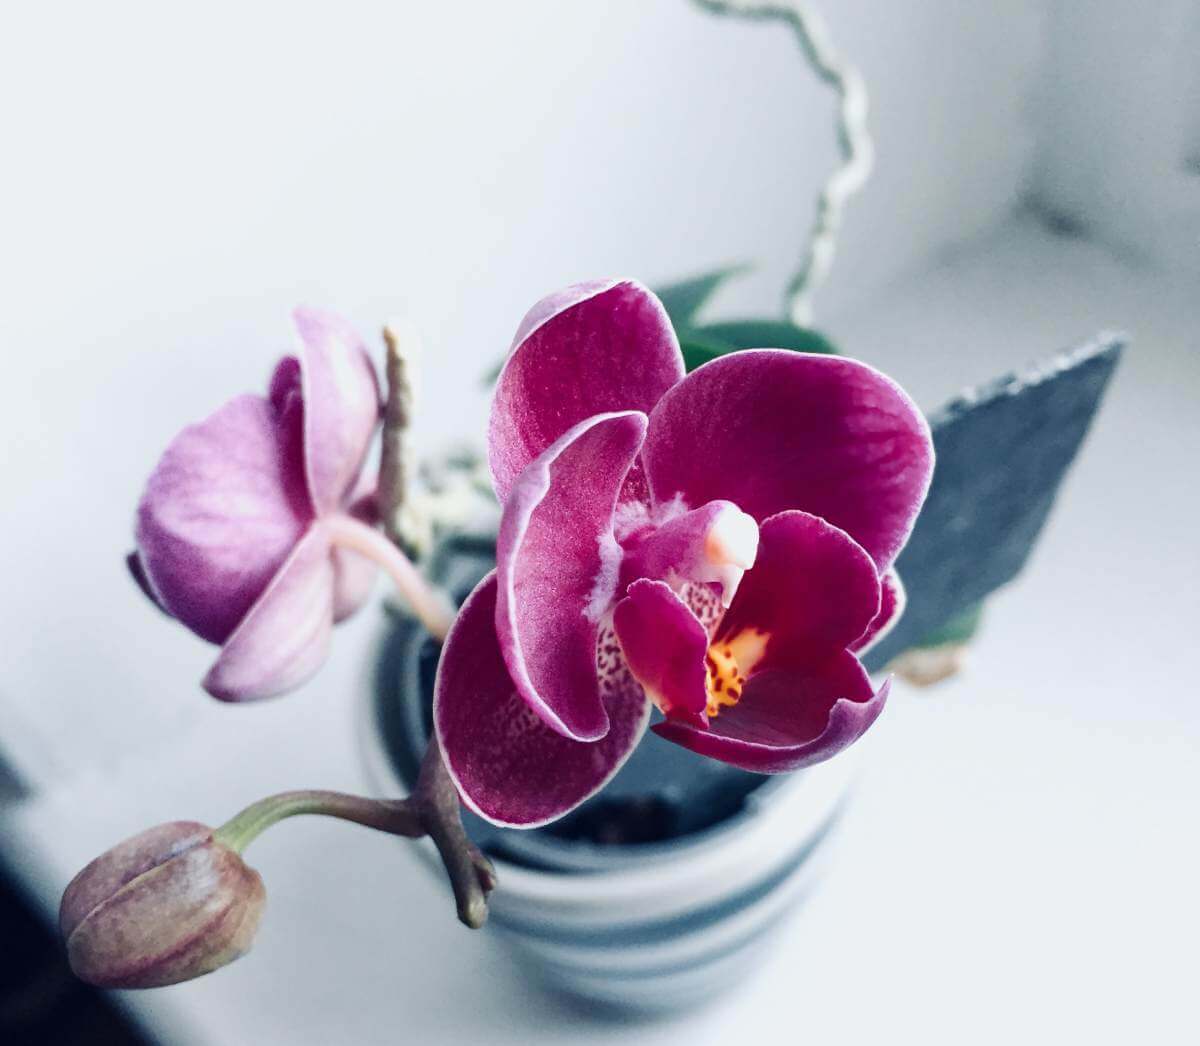 La orquídea